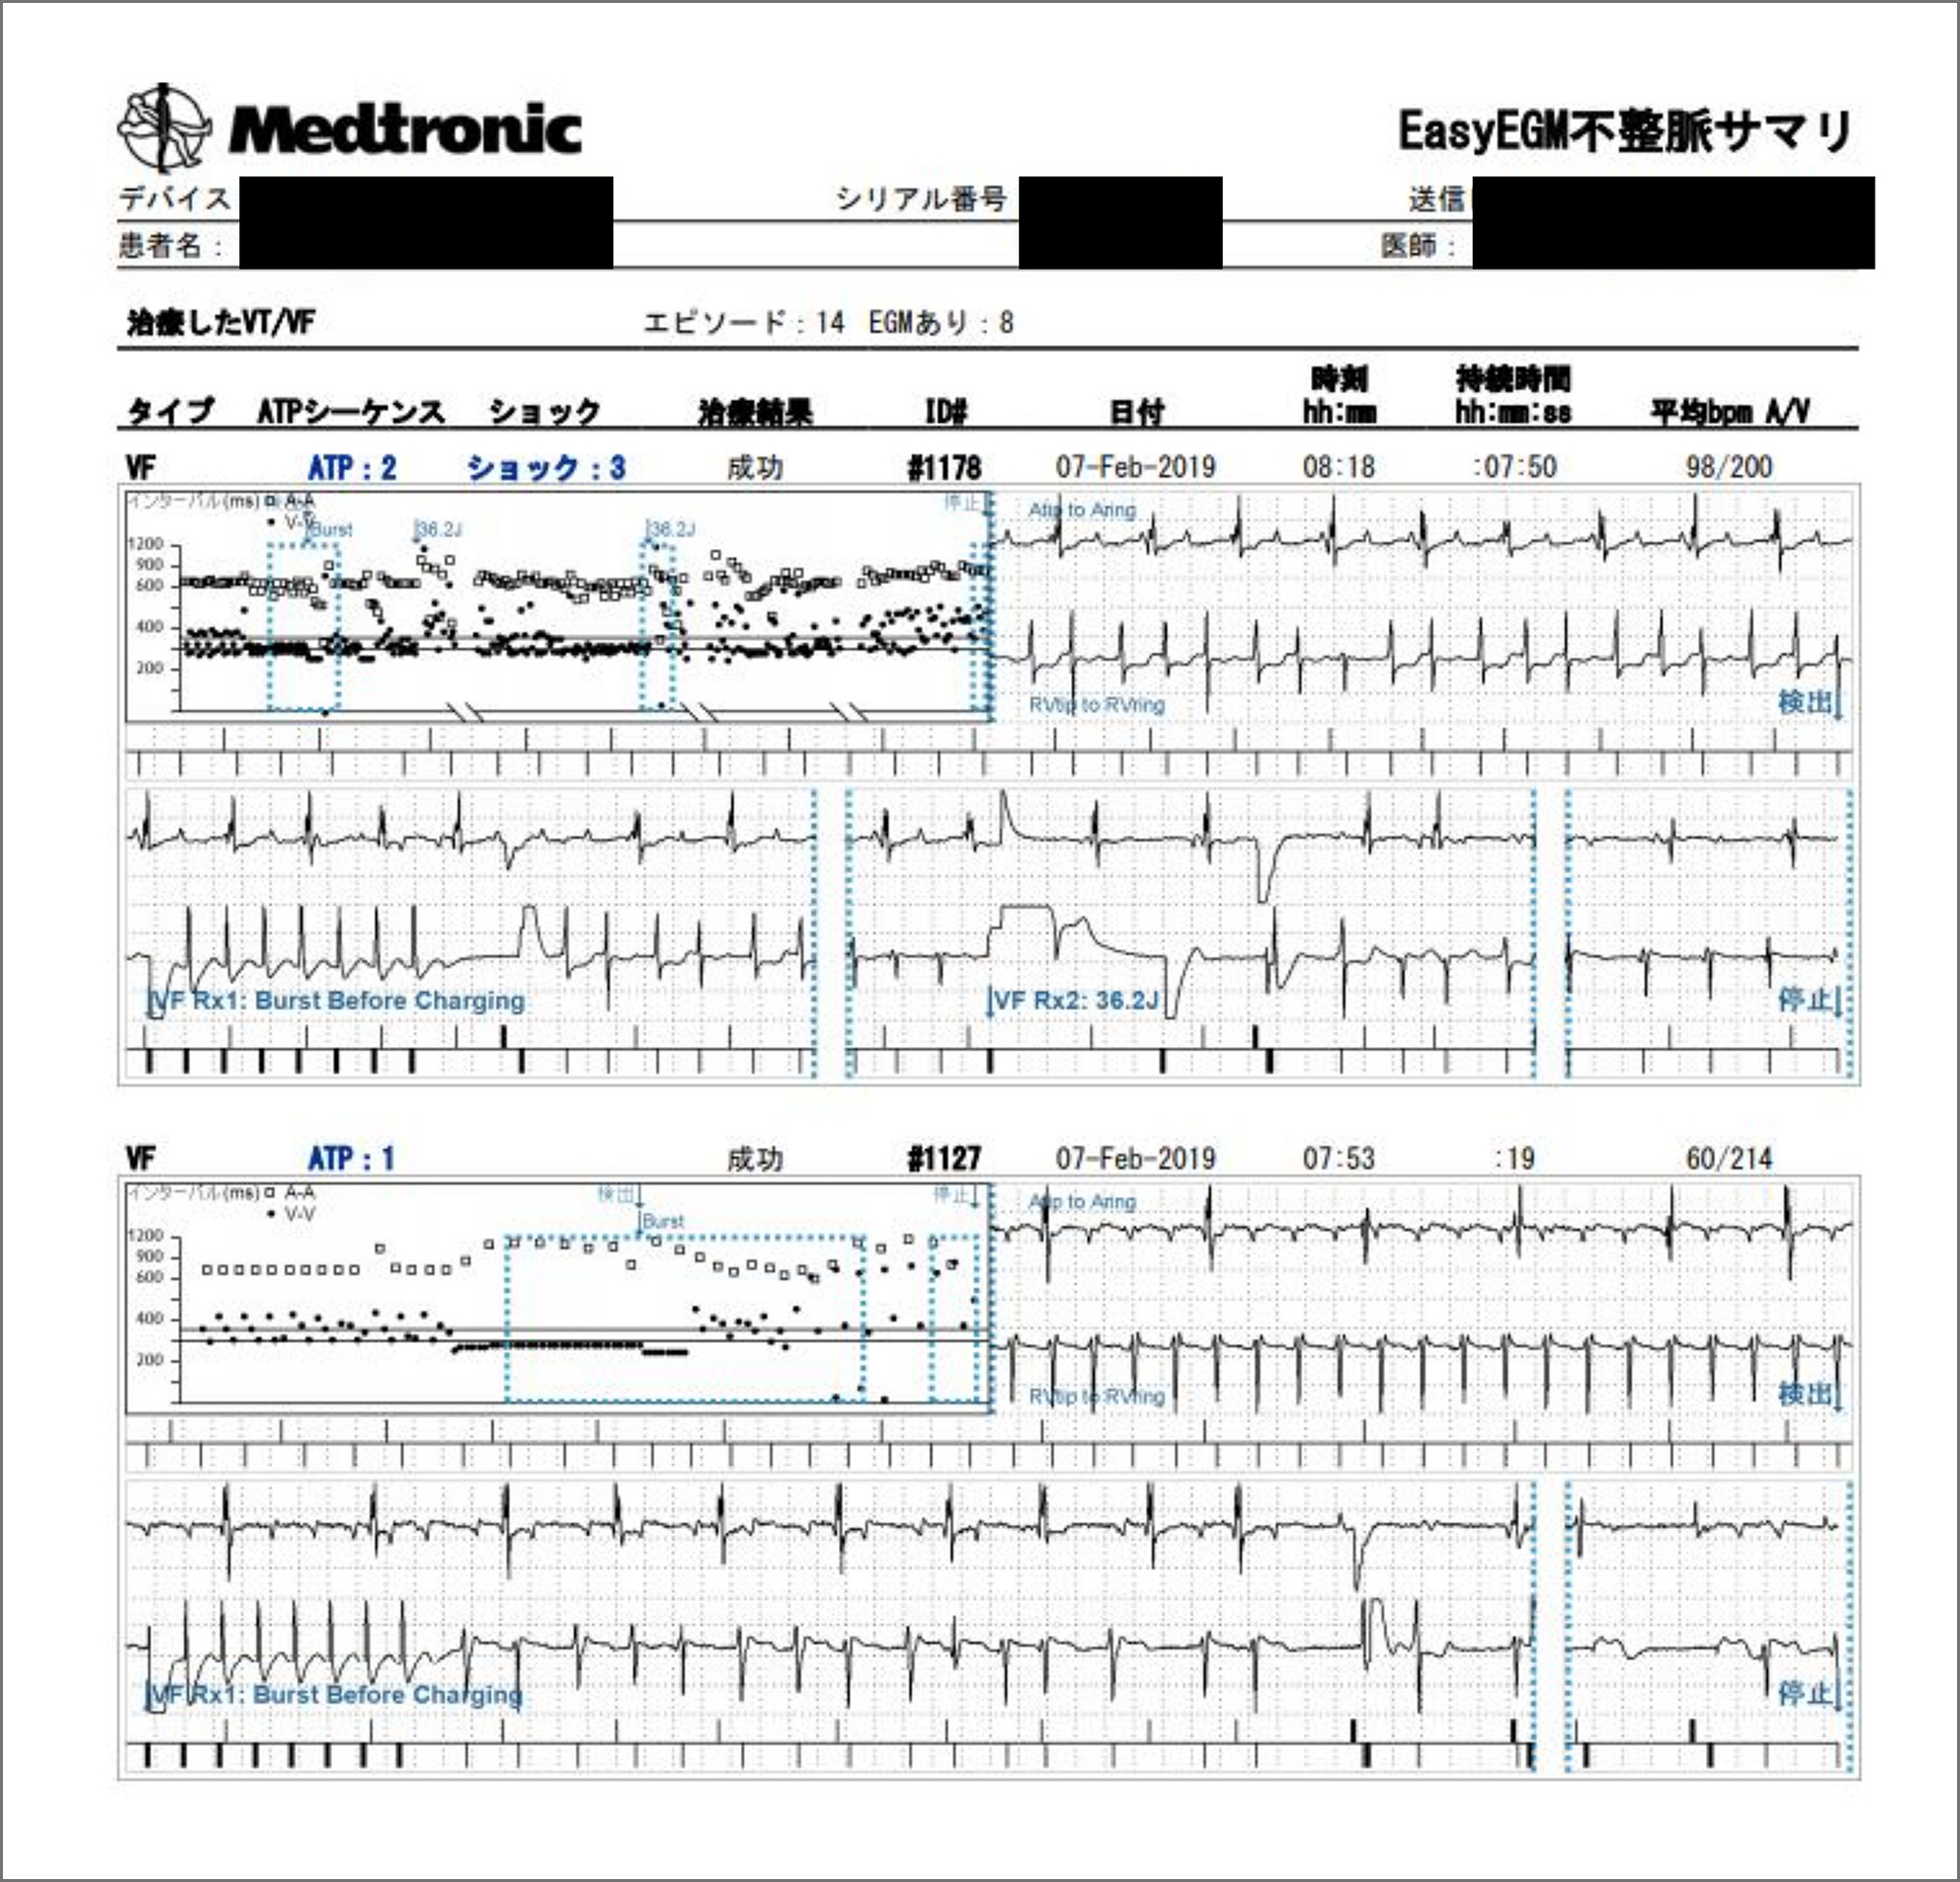 図2：遠隔アラートで受信した, ショック作動を要した心室頻拍症例